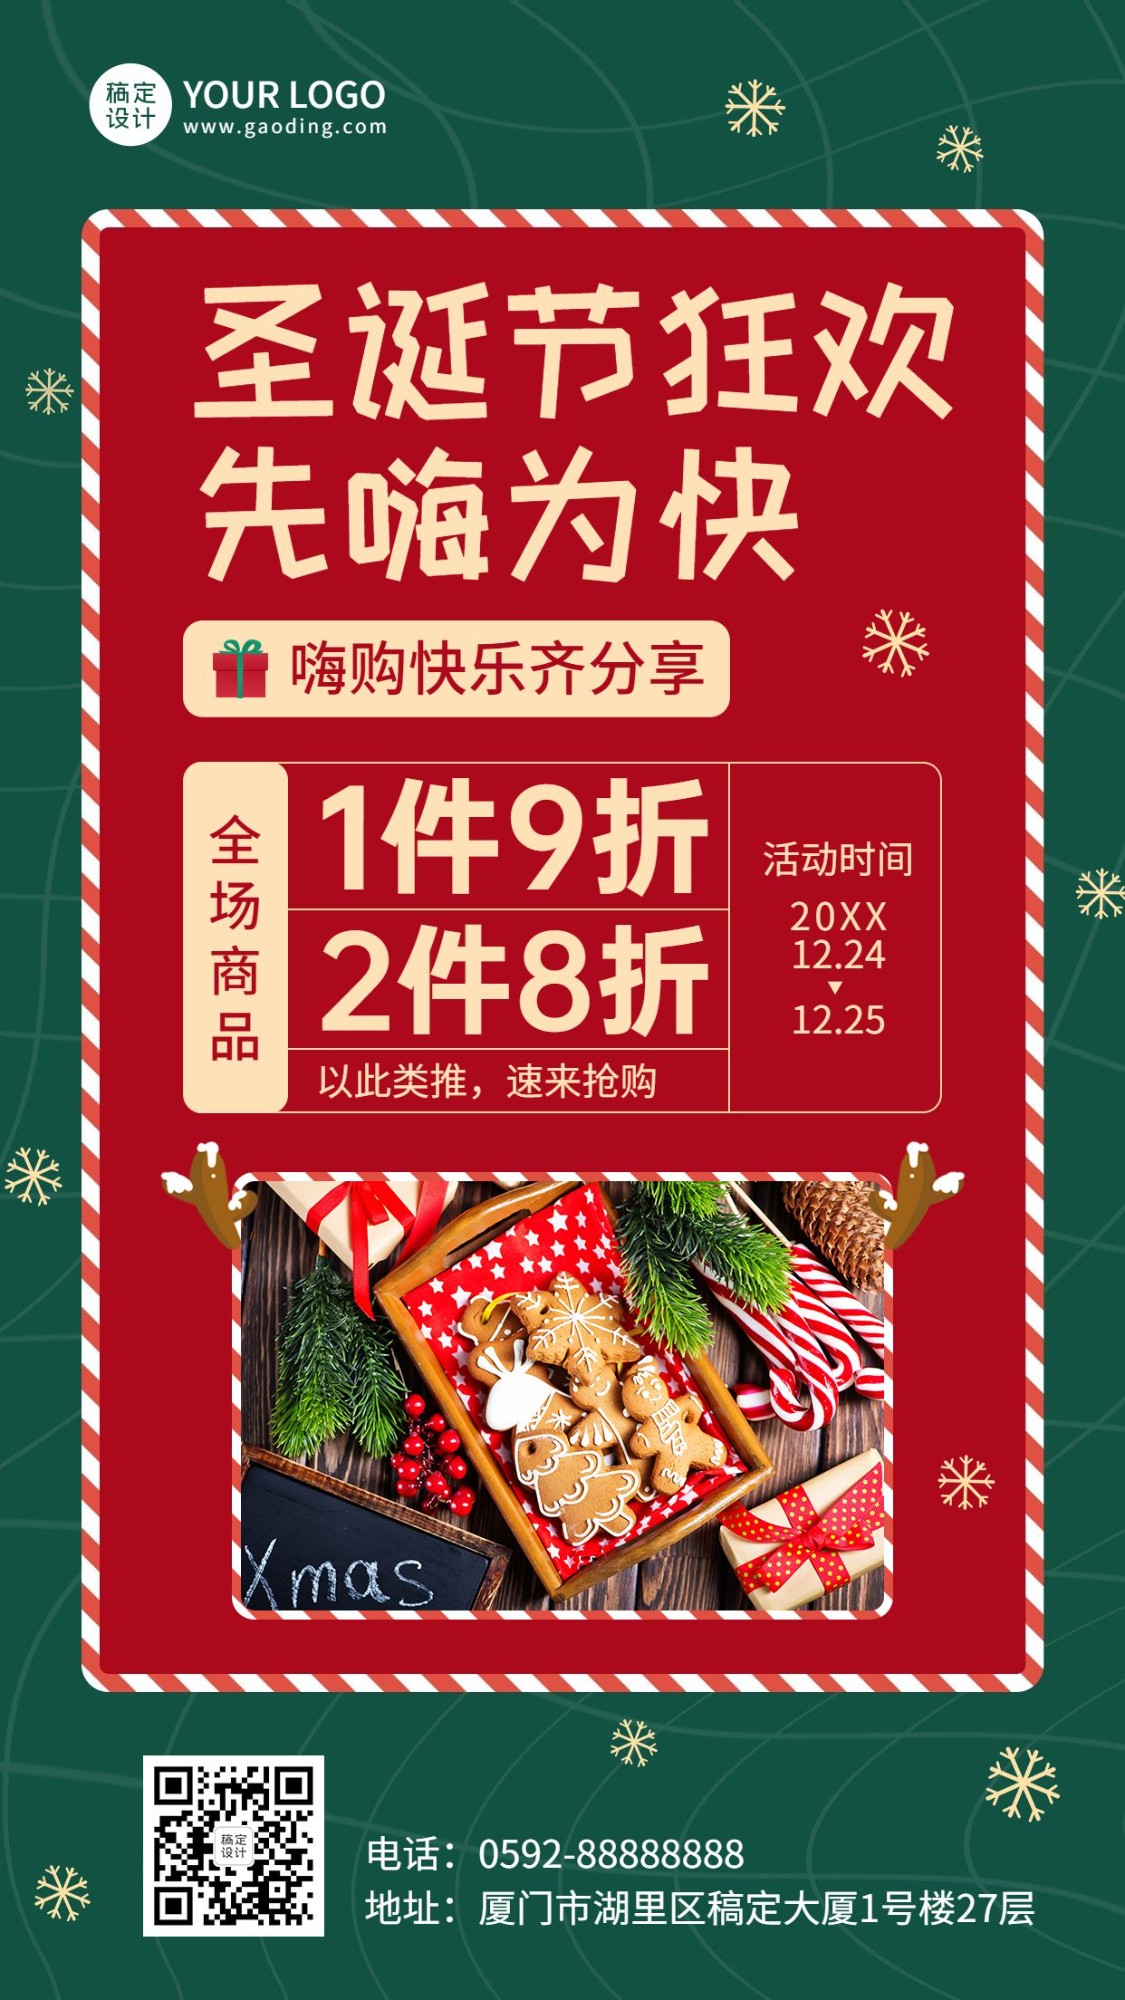 圣诞节活动促销产品展示手机海报预览效果